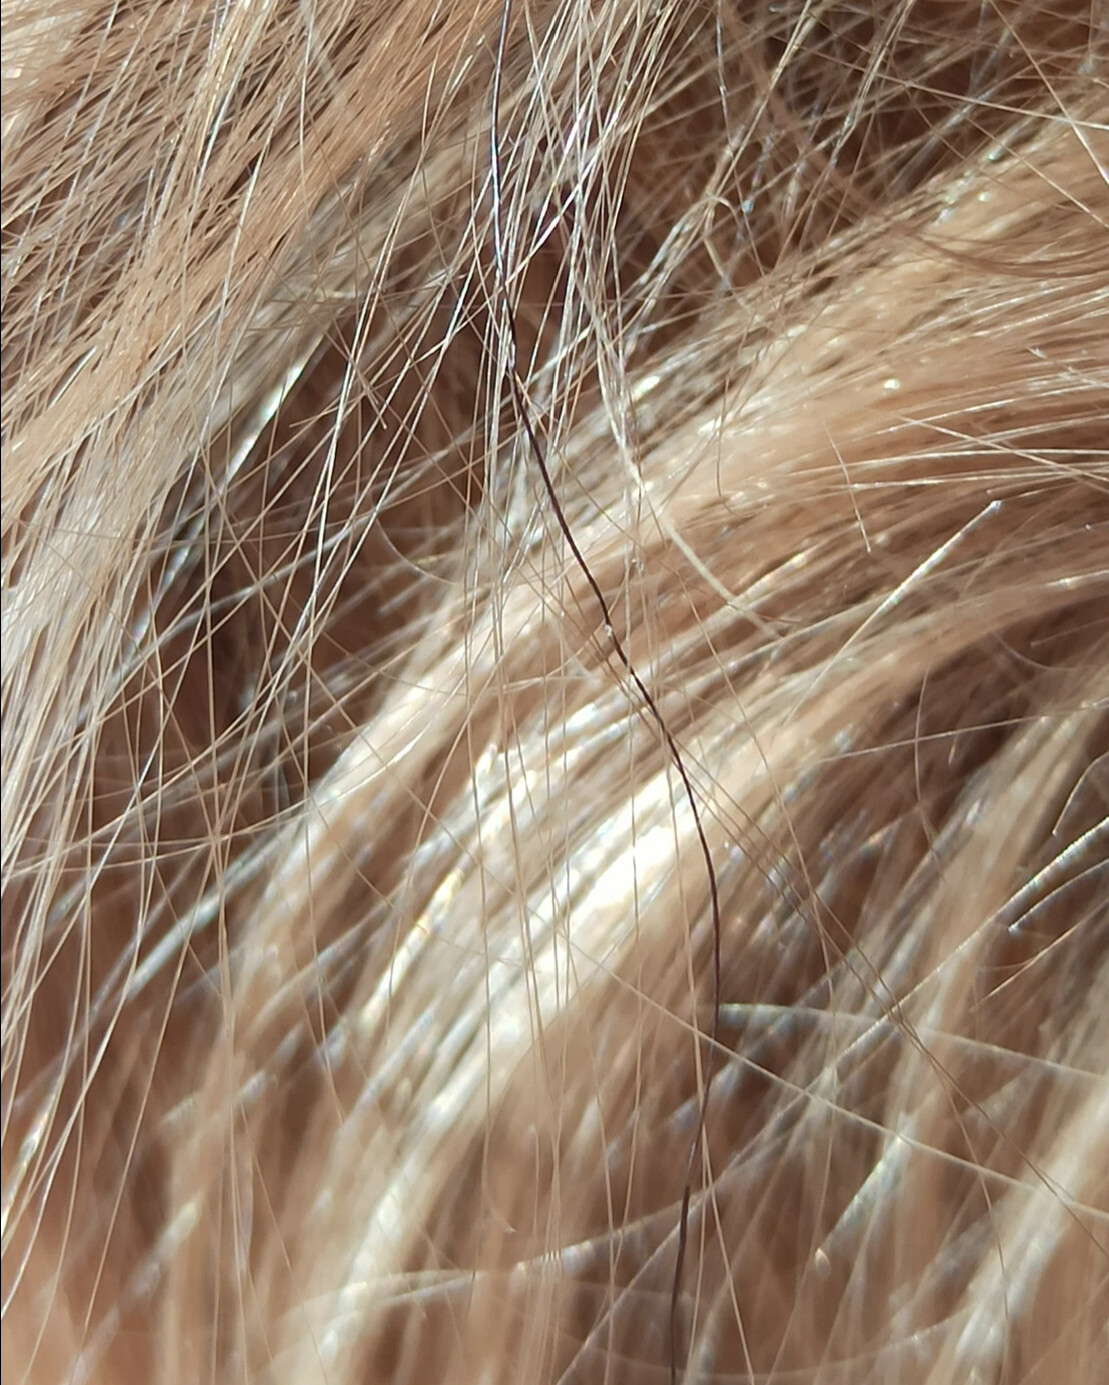 Был бы повод: как цвет волос меняет жизнь? И меняет ли? Личный (но коллективный:) опыт